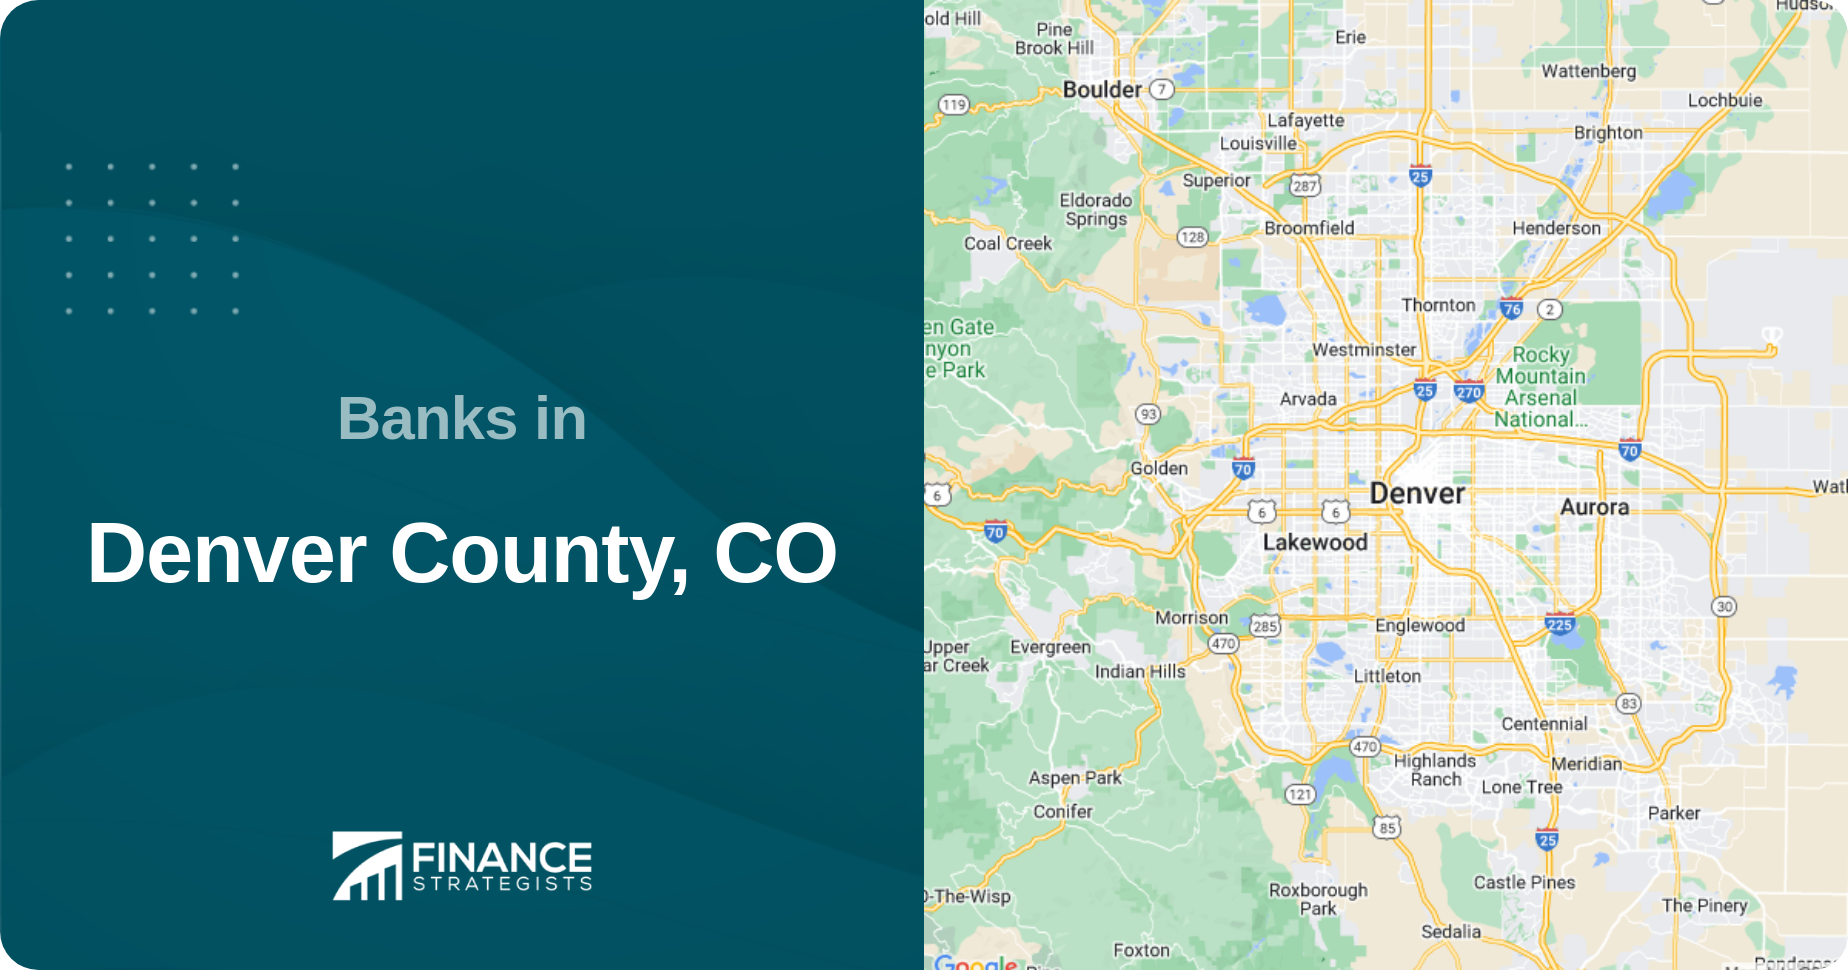 Banks in Denver County, CO